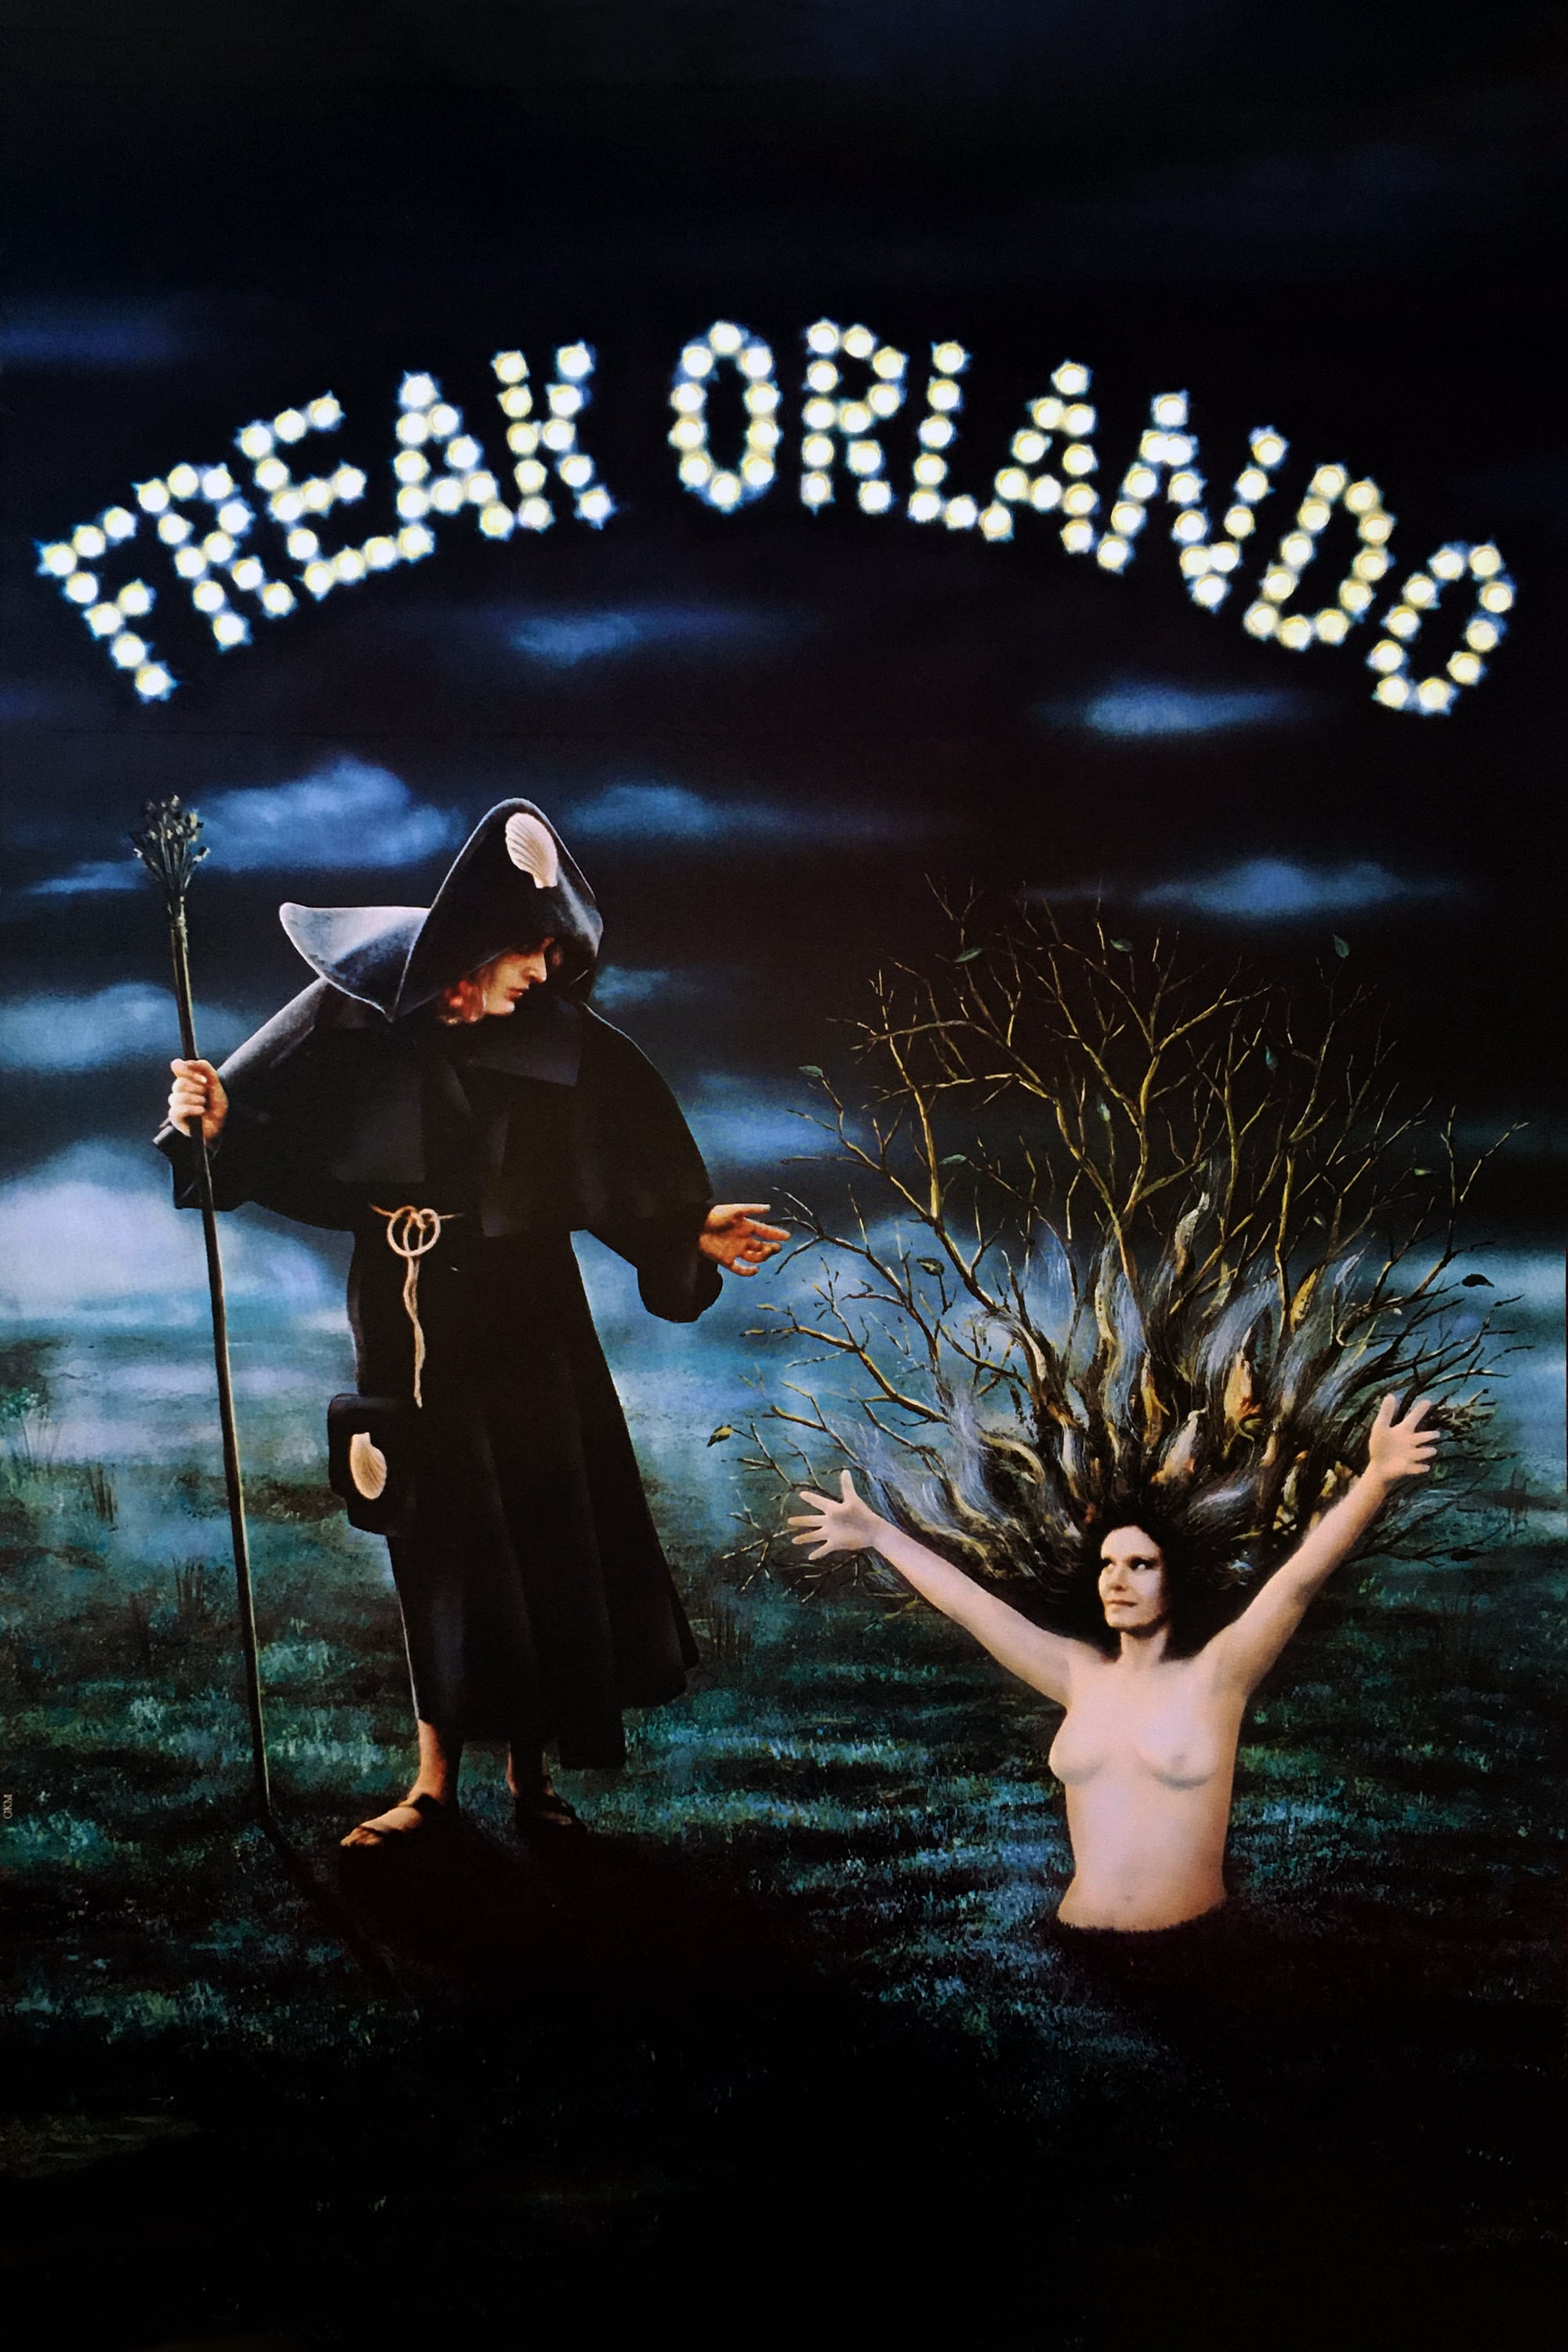 Caratula de FREAK ORLANDO (Freak Orlando) 